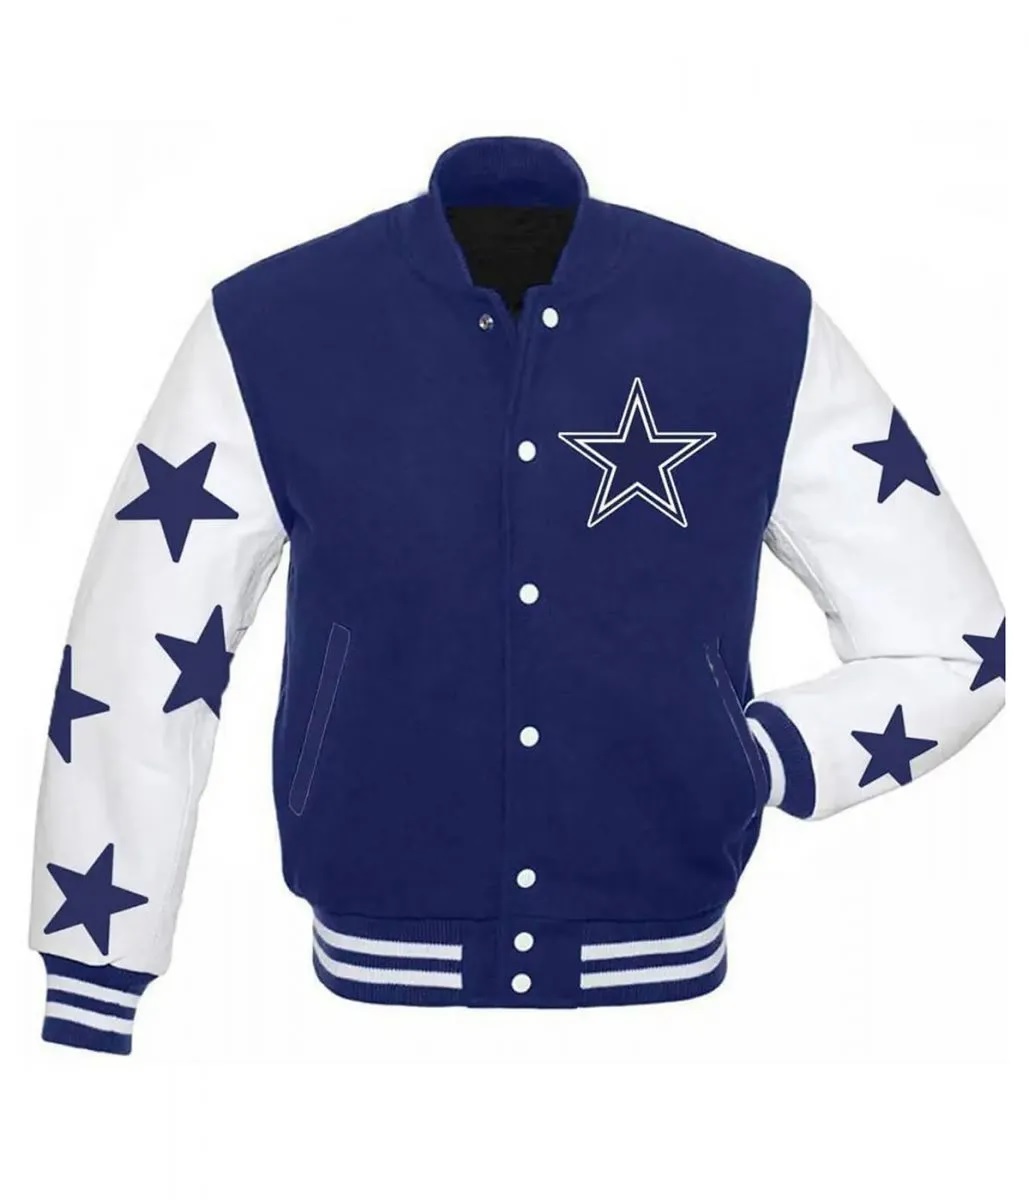 Dallas Cowboys Stars Varsity Royal Blue and White Jacket